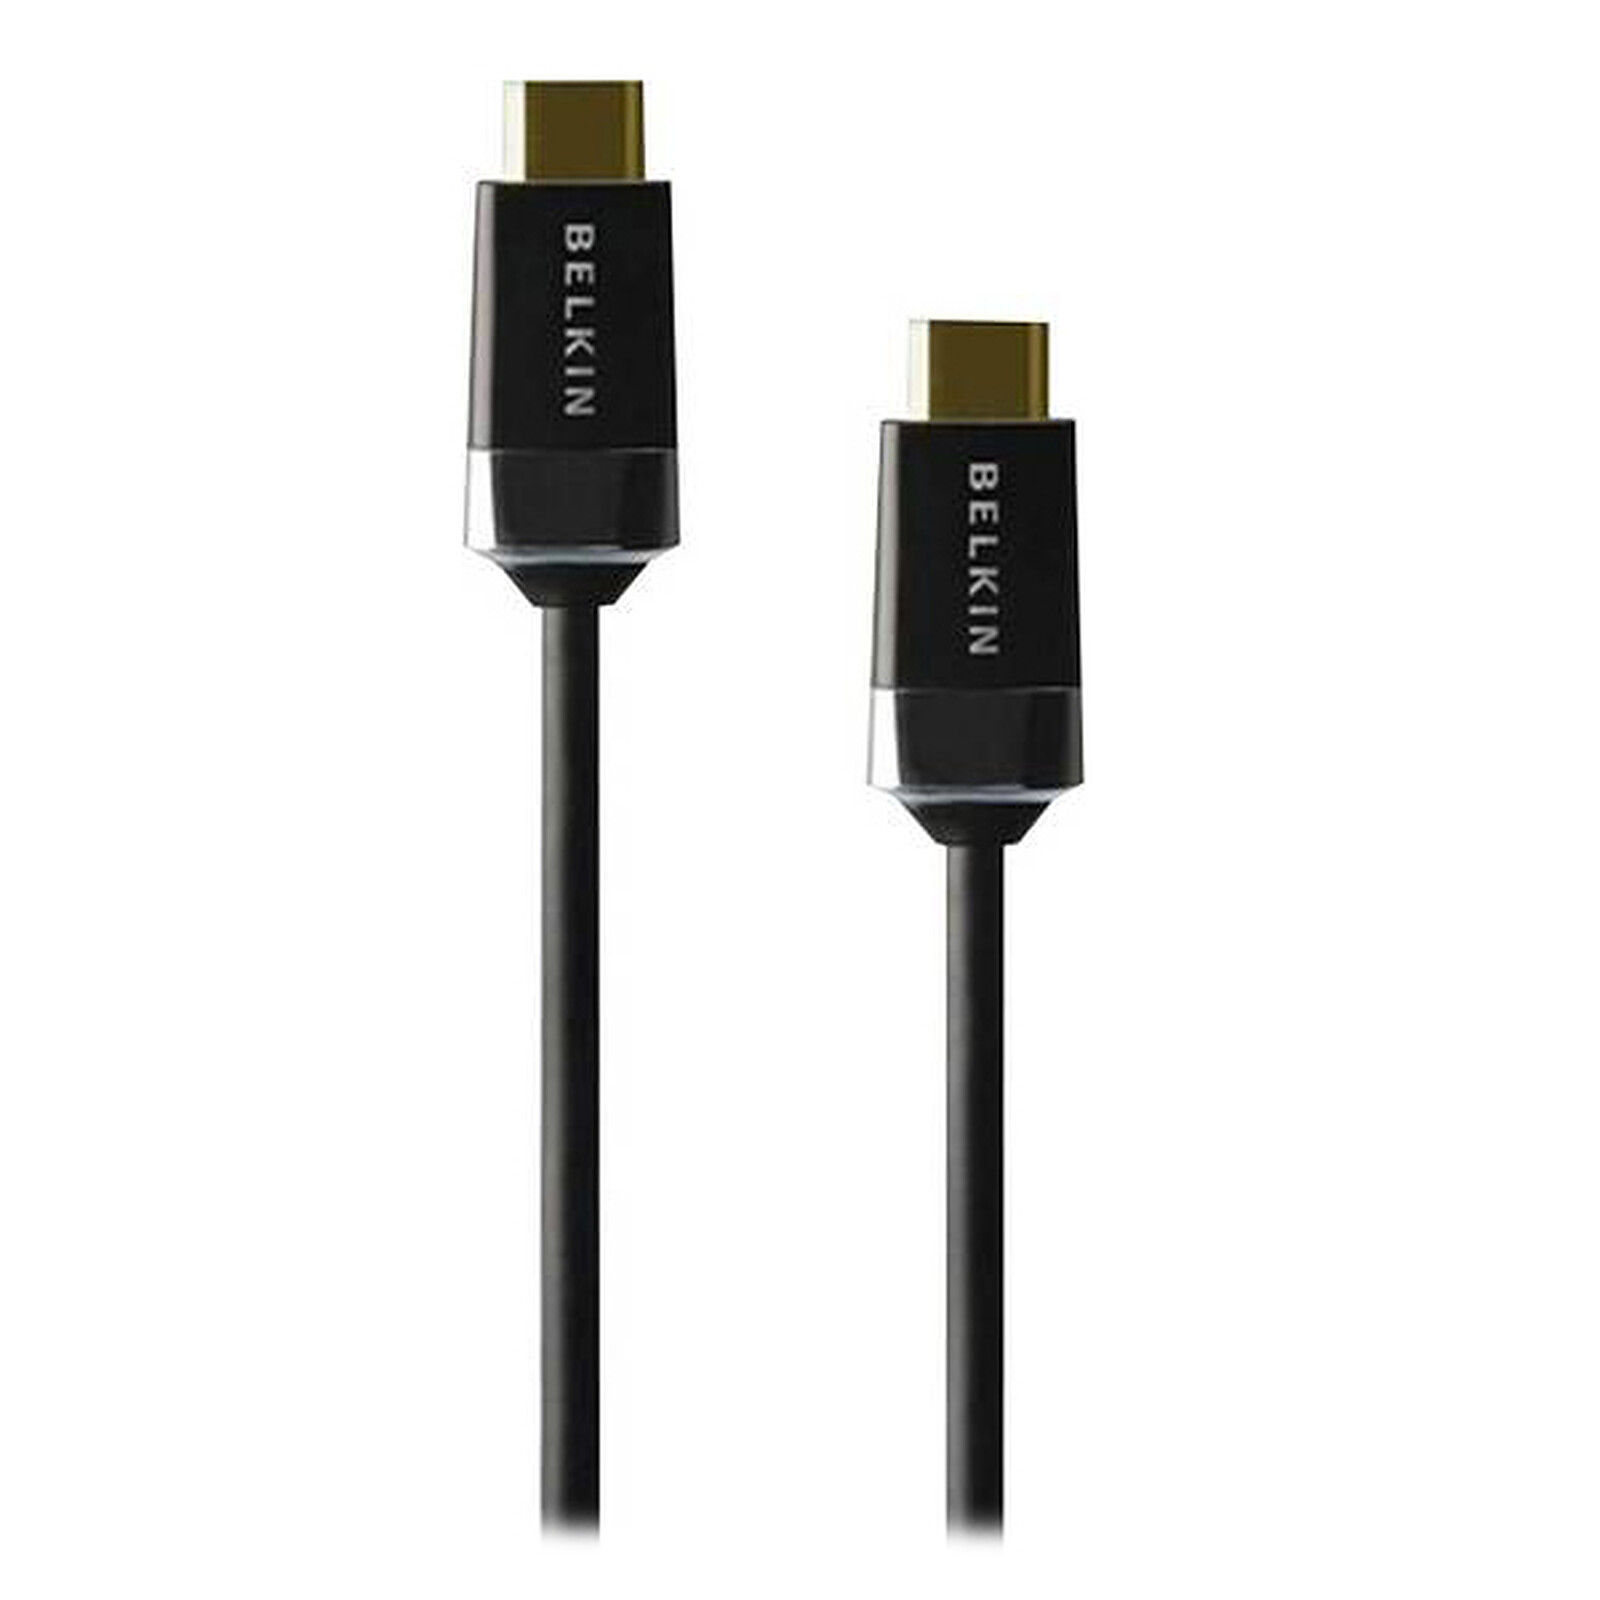 Câble HDMI vers HDMI 4K 5m - Noir